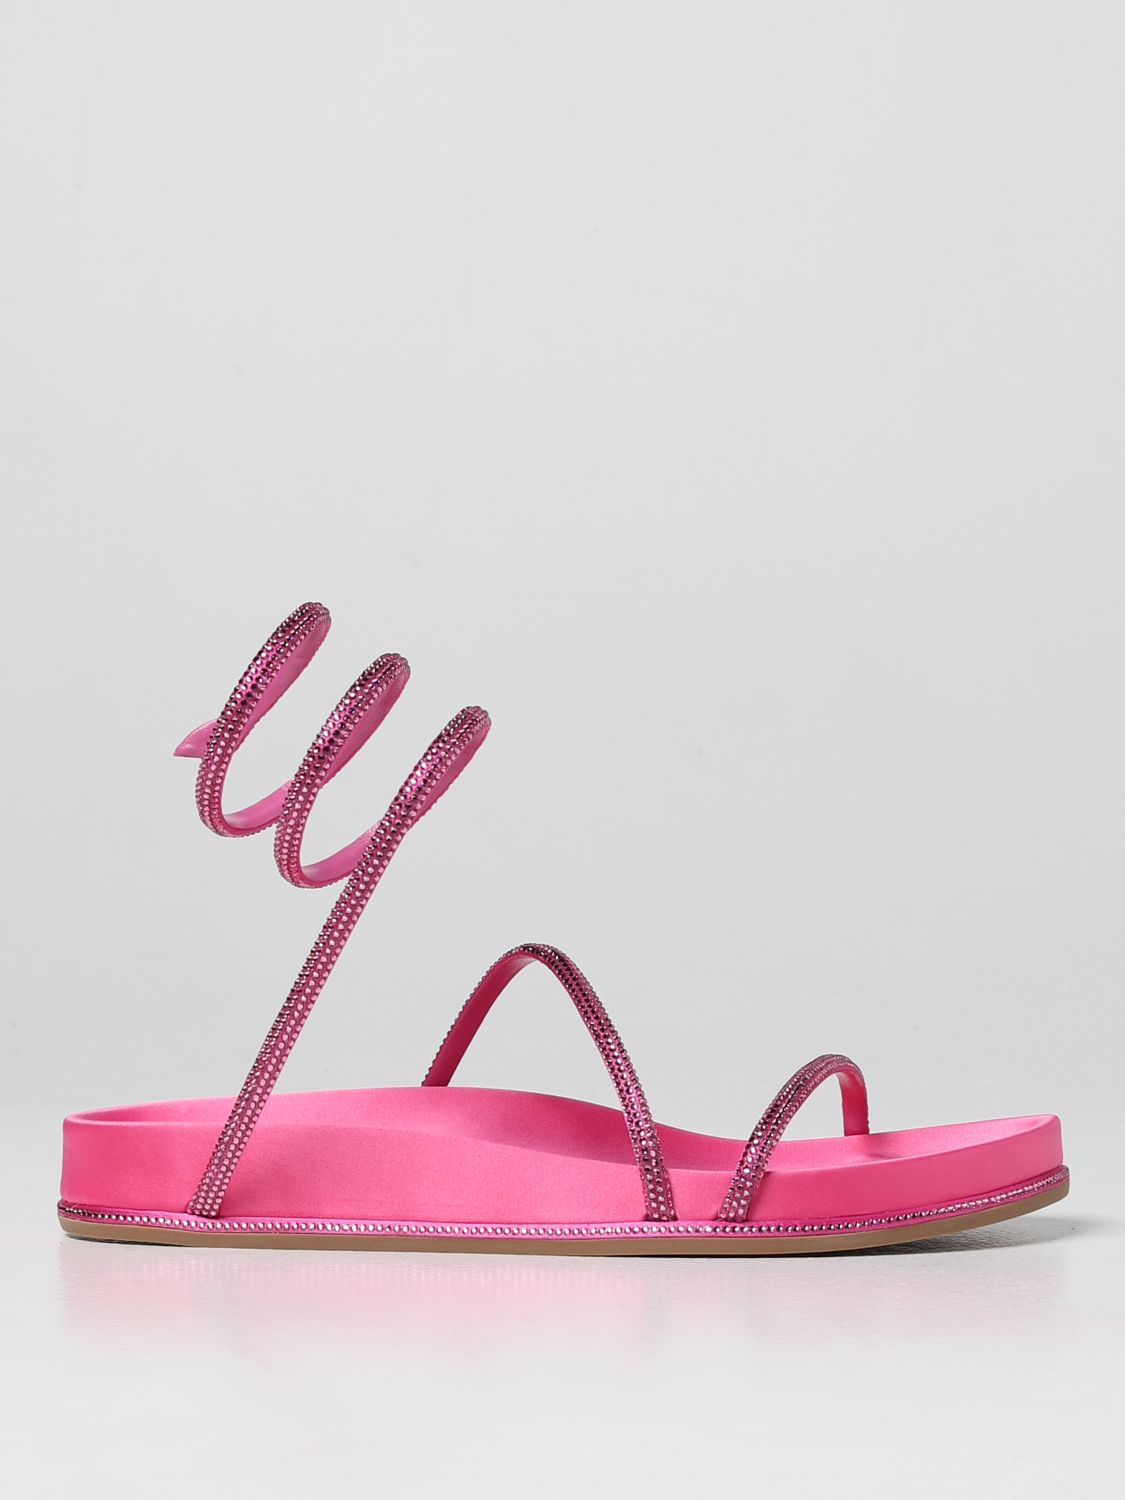 Hen Aktentas tempel RENE CAOVILLA: Gisele René Caovilla sandal in satin with rhinestones - Pink  | Rene Caovilla flat sandals c11342020r001v466 online on GIGLIO.COM